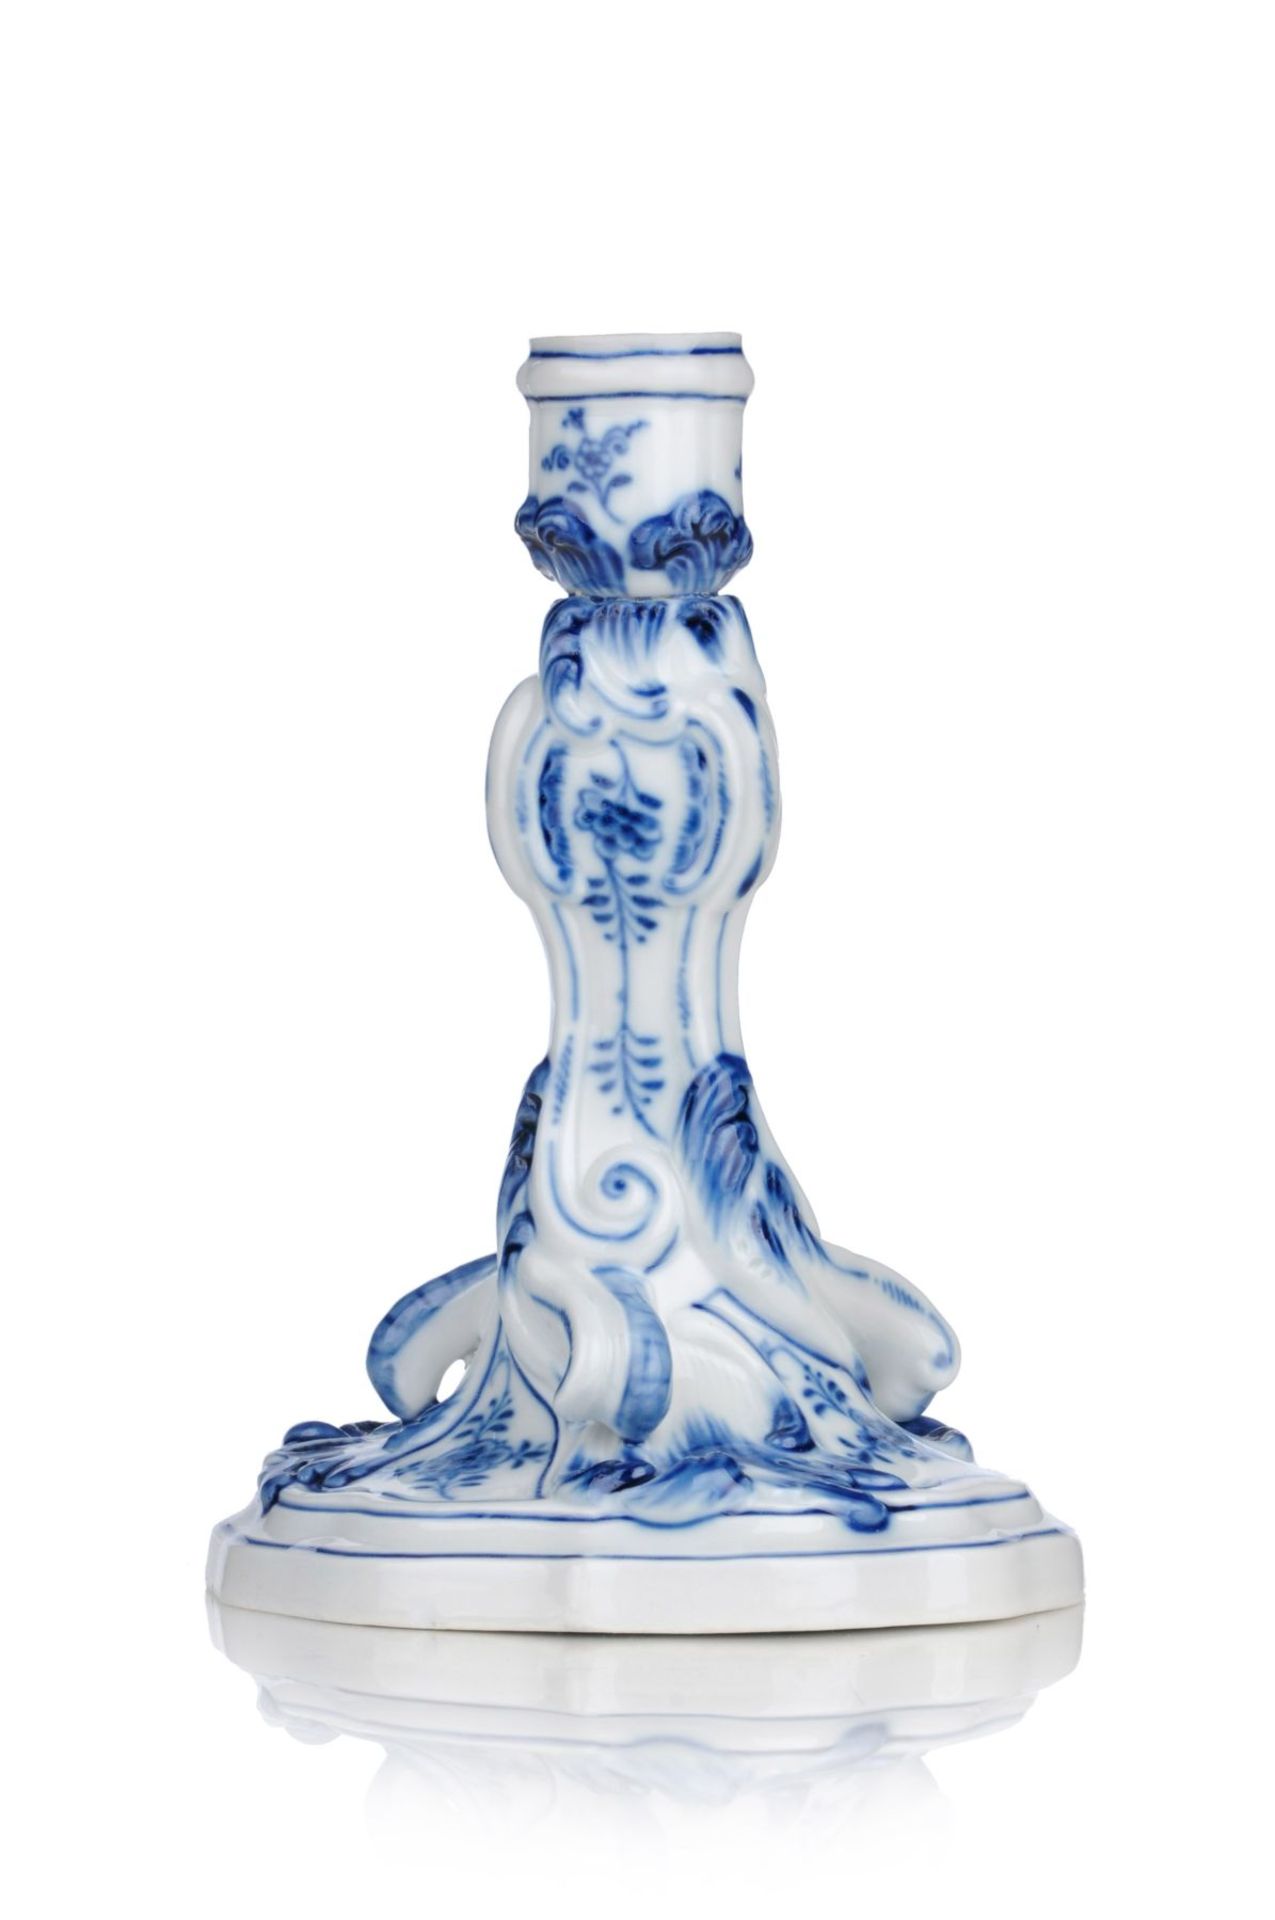 Leuchter "Zwiebelmuster". Meissen. 2. H. 19. Jh.Porzellan, glasiert, montiert und in Unterglasurblau